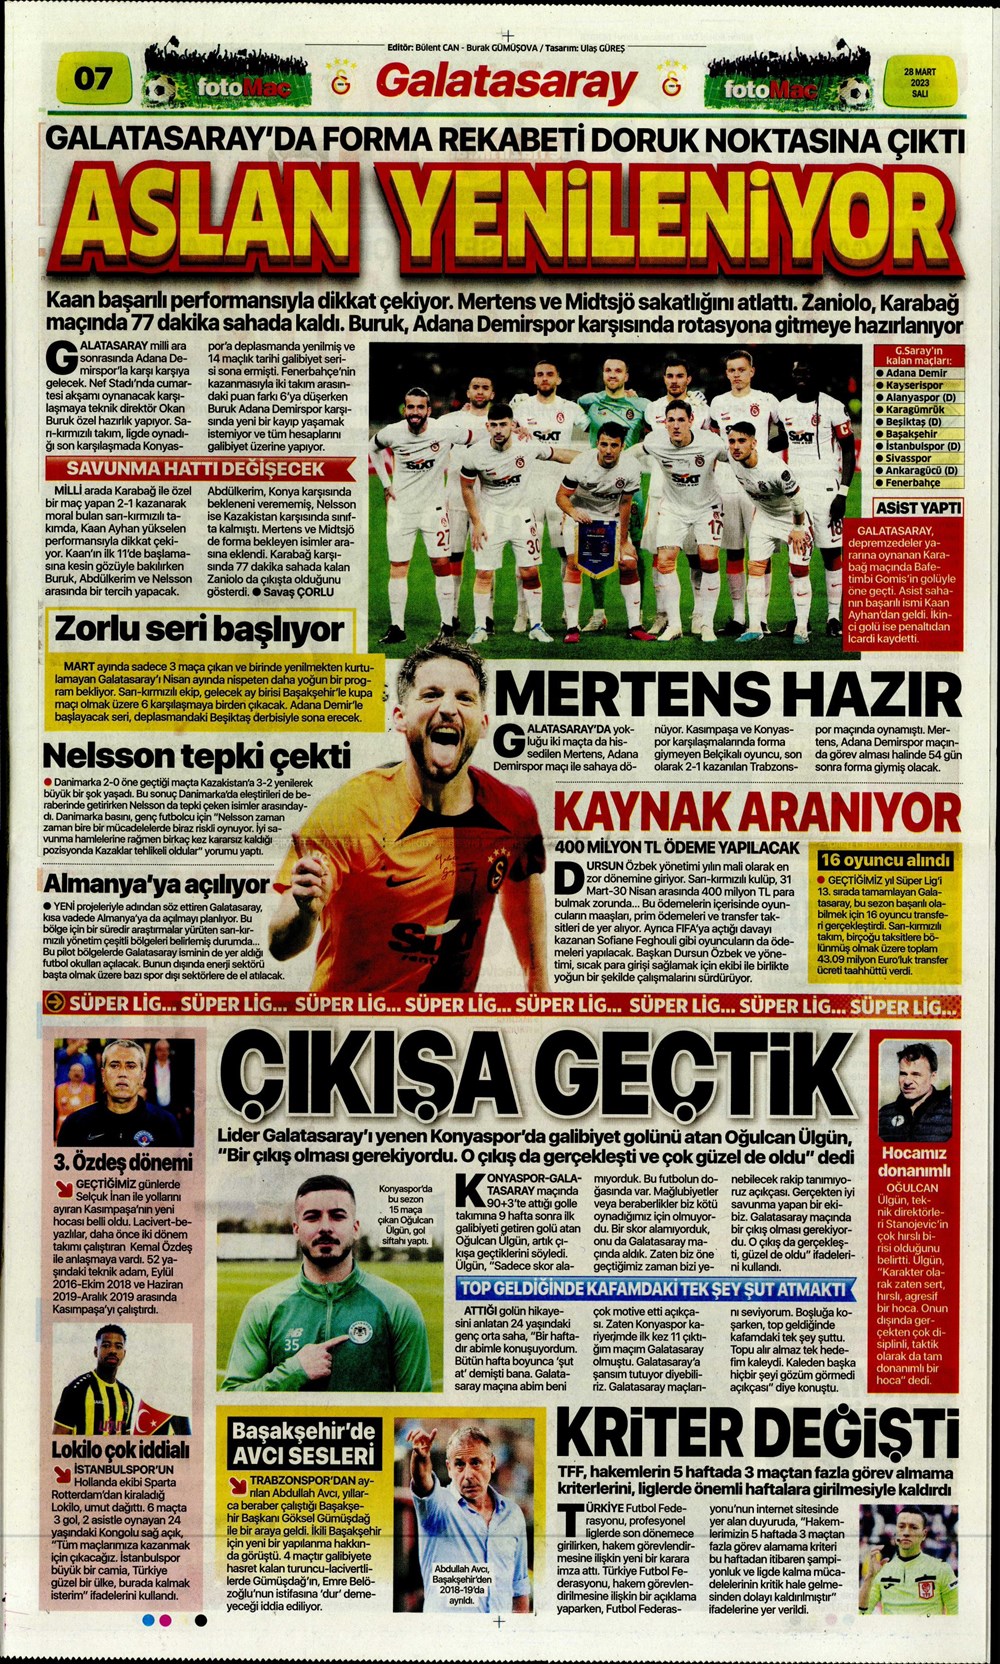 "Vurduğumuz gol olsun" - Sporun manşetleri - 14. Foto